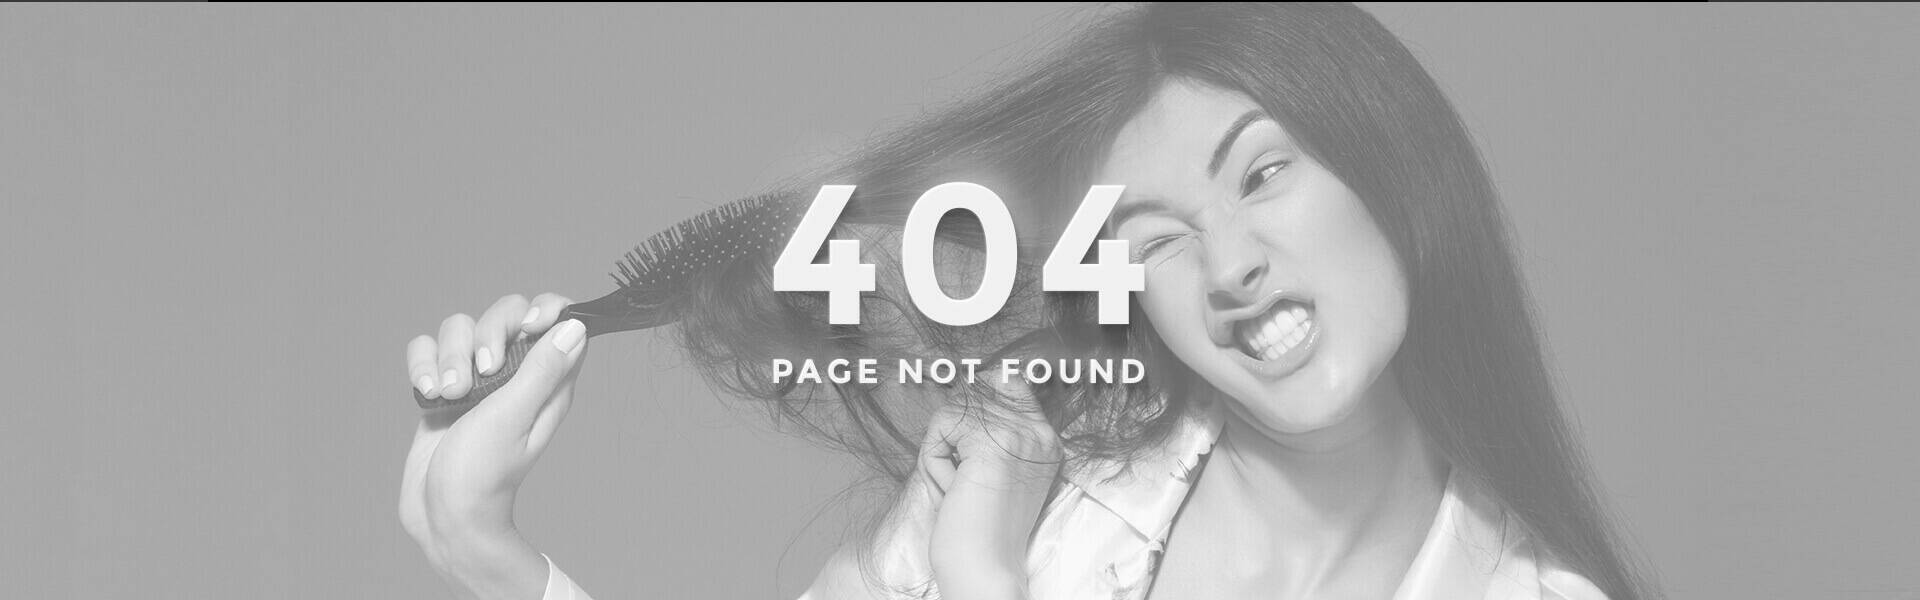 Immagine 404